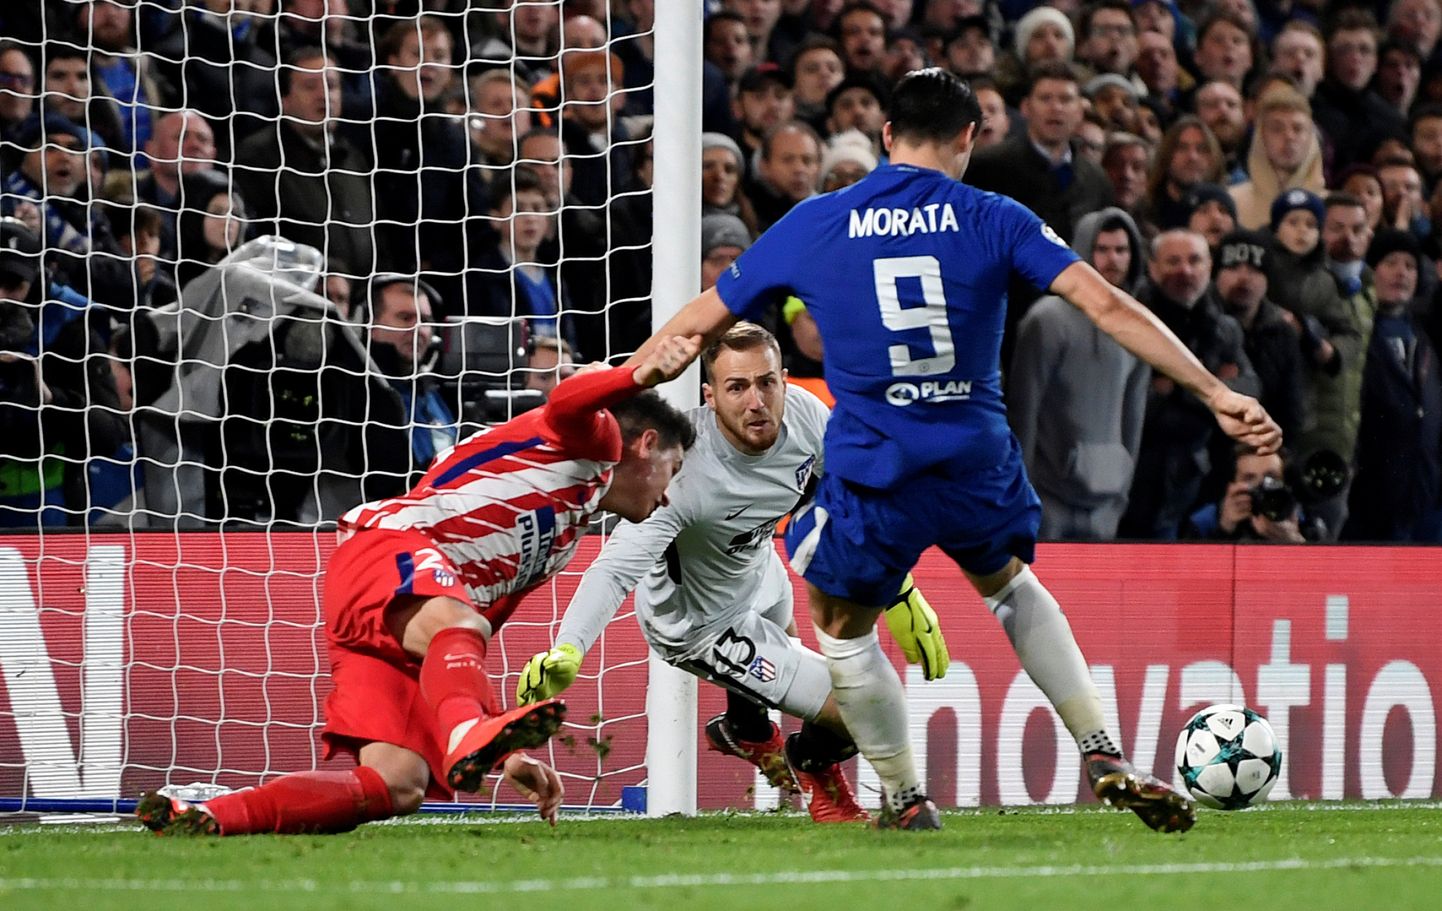 Madridi Atletico ja Londoni Chelsea väljusid omavahelisest vastasseisust mõlemad kaotajatena: Hispaania meeskond jäi alagrupis kolmandaks, Inglismaa sats mängis maha alagrupi esikoha. Matš lõppes 1:1.